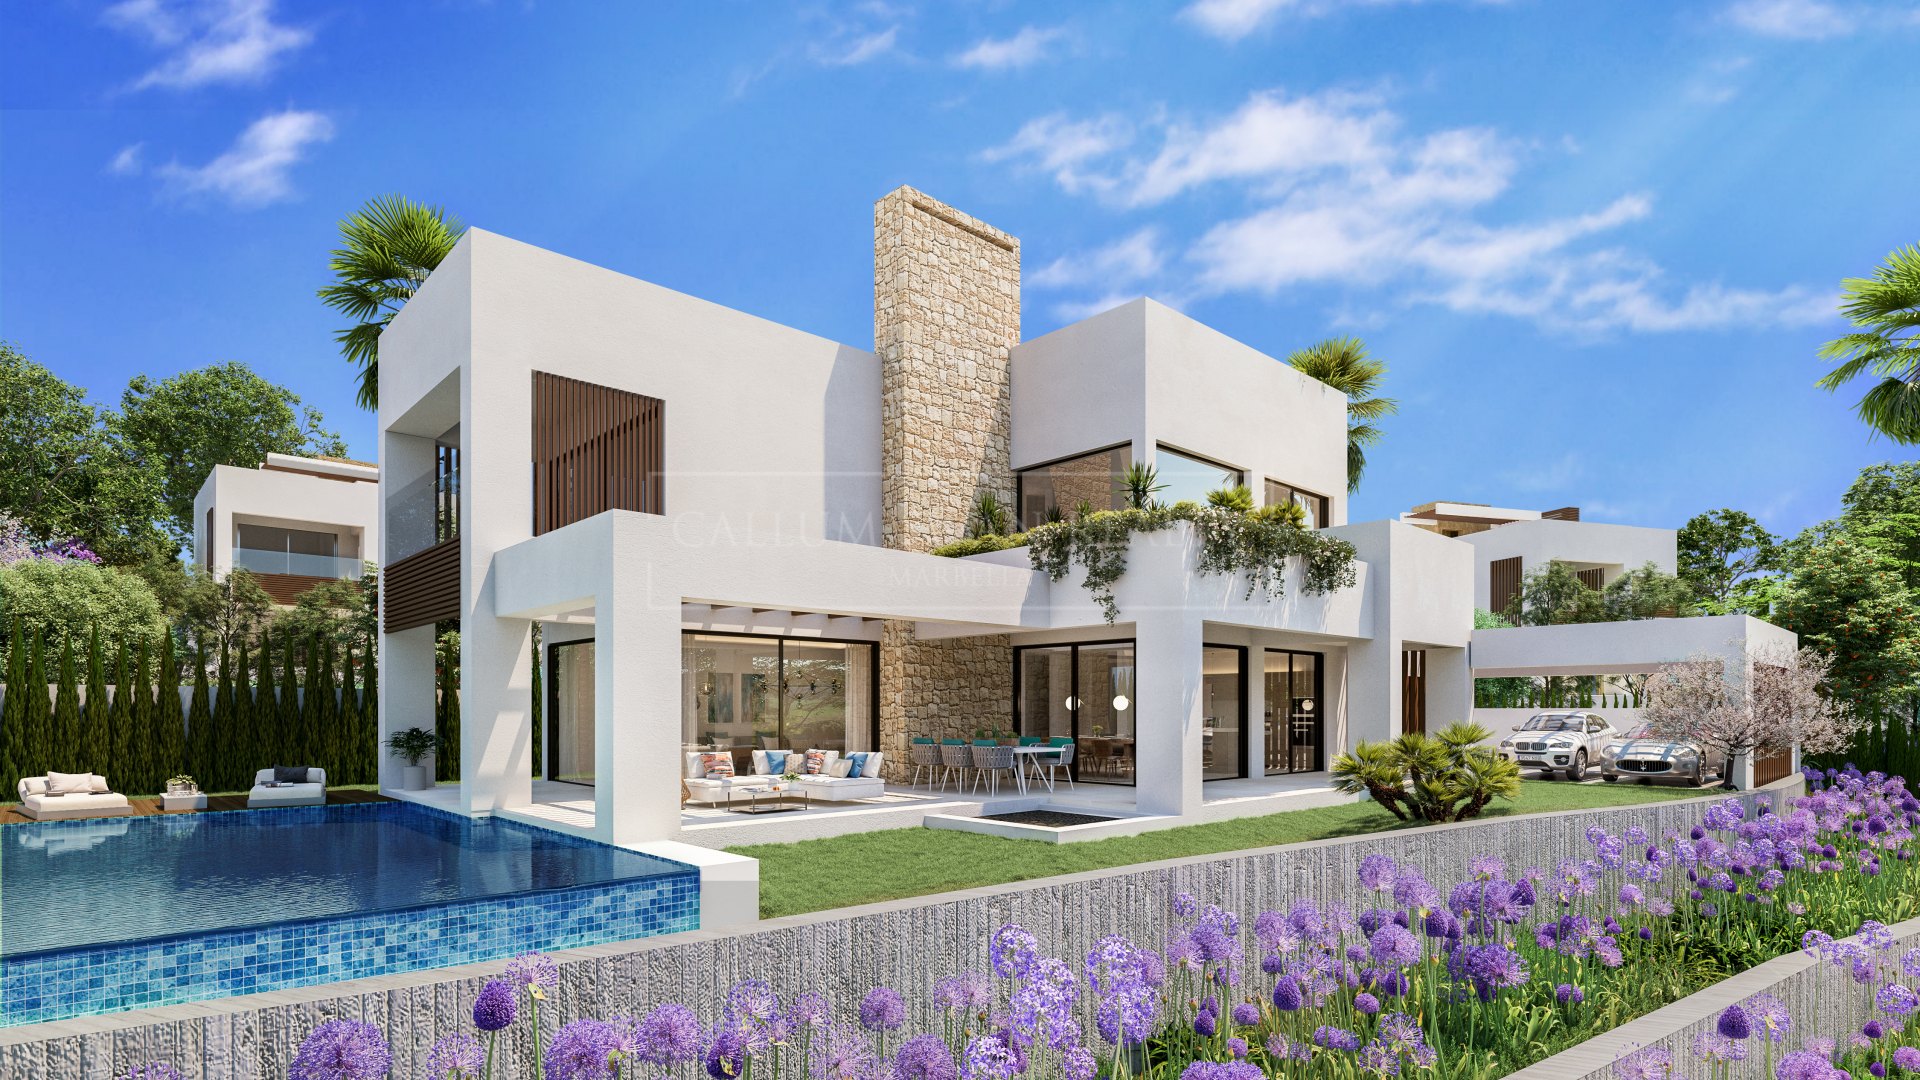 Brand new modern villa in gated complex in the centre of Marbella